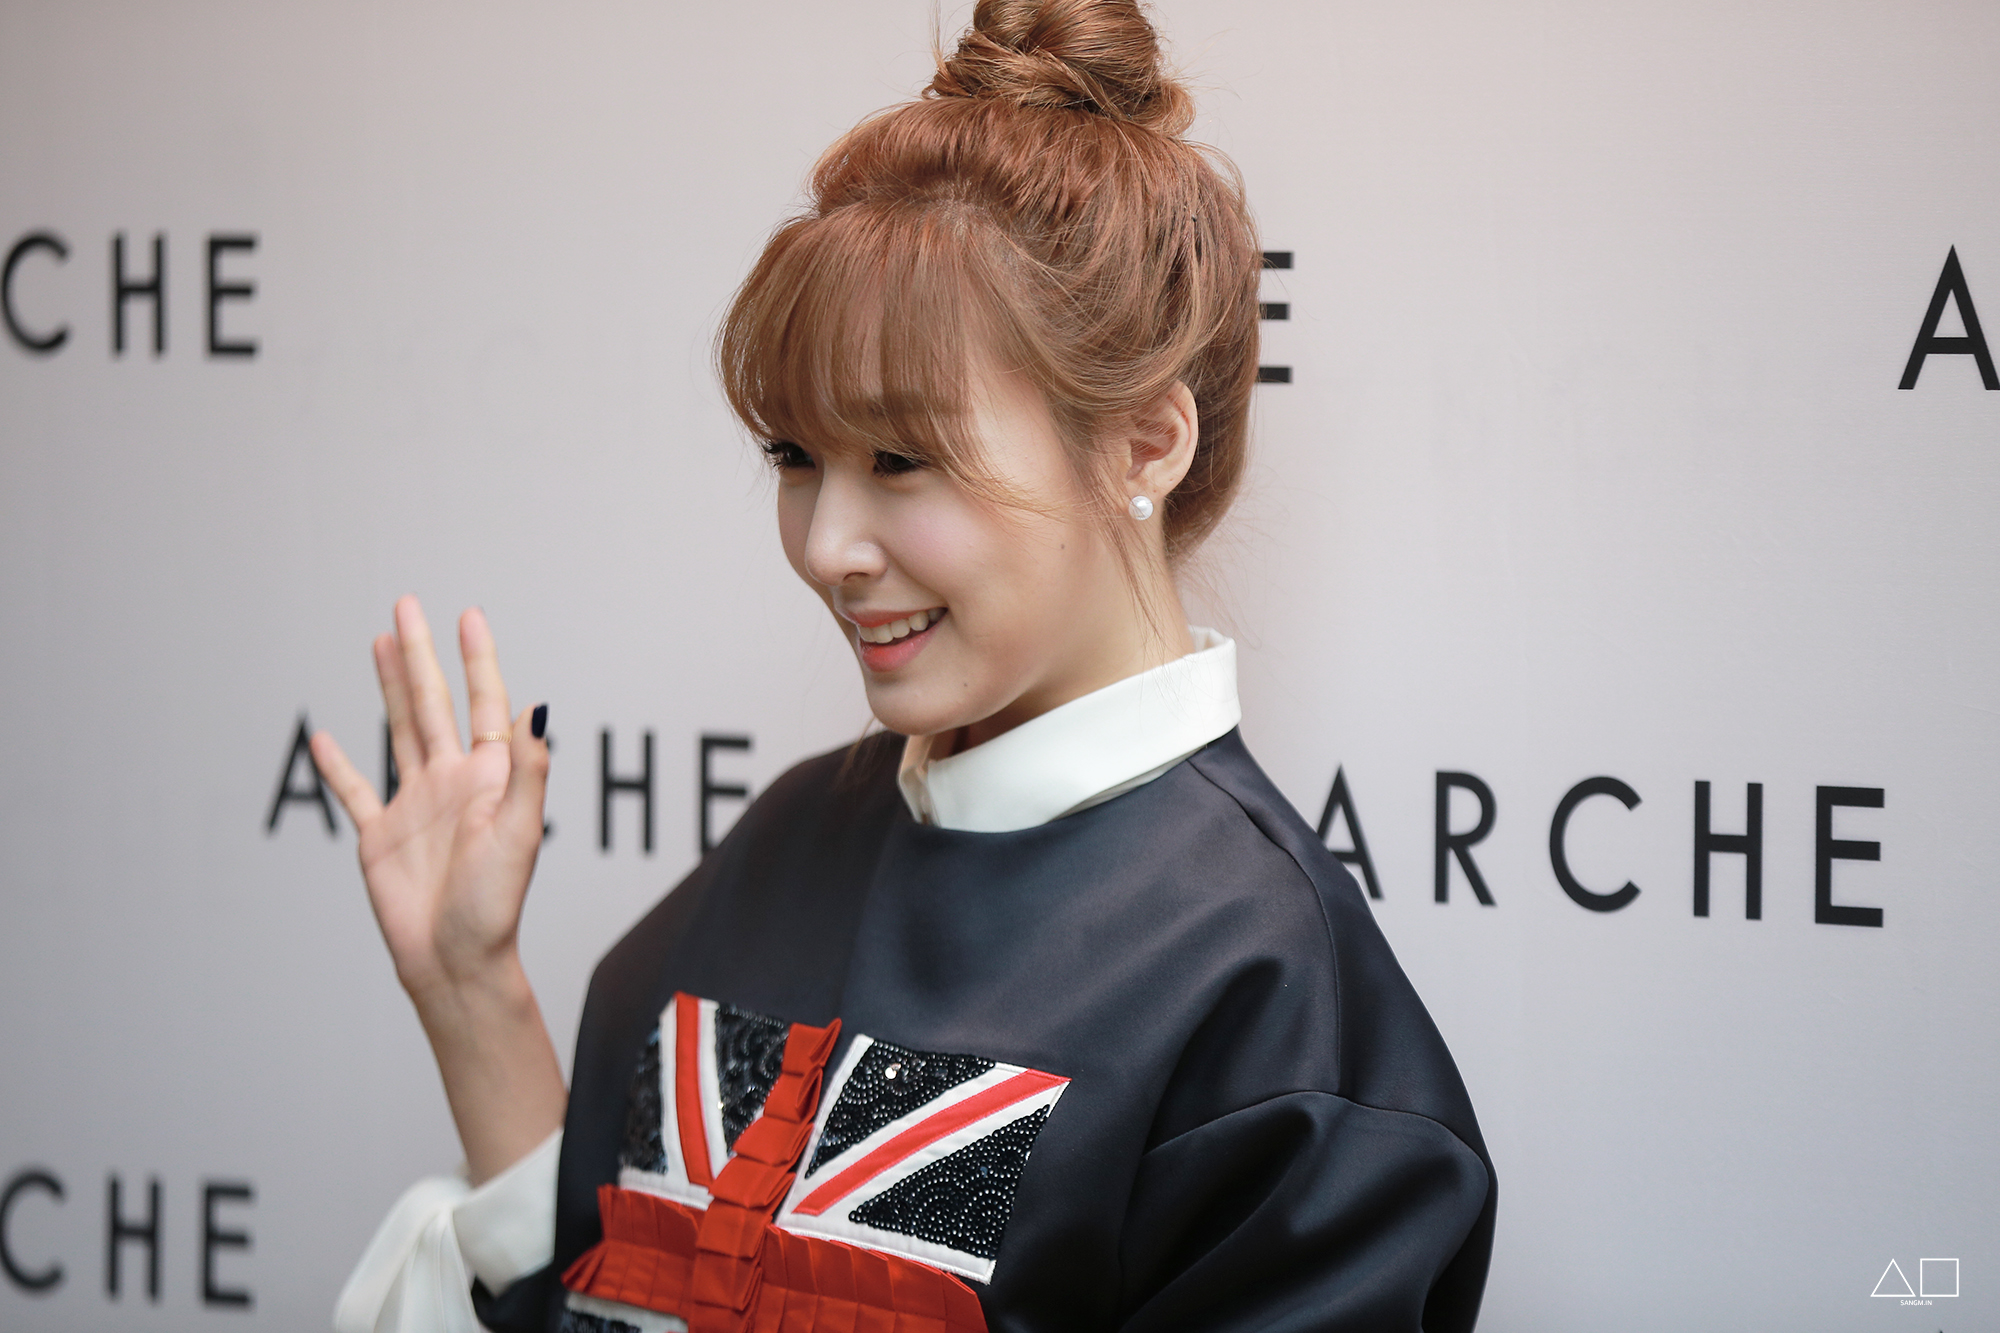 [PIC][20-10-2014]Tiffany xuất hiện tại buổi ra mắt BTS mới của thương hiệu "Arche" trong khuôn khổ tuần Lễ thời trang "2015 S/S SEOUL FASHION WEEK" vào chiều nay 2569FE4C5445E17837960F